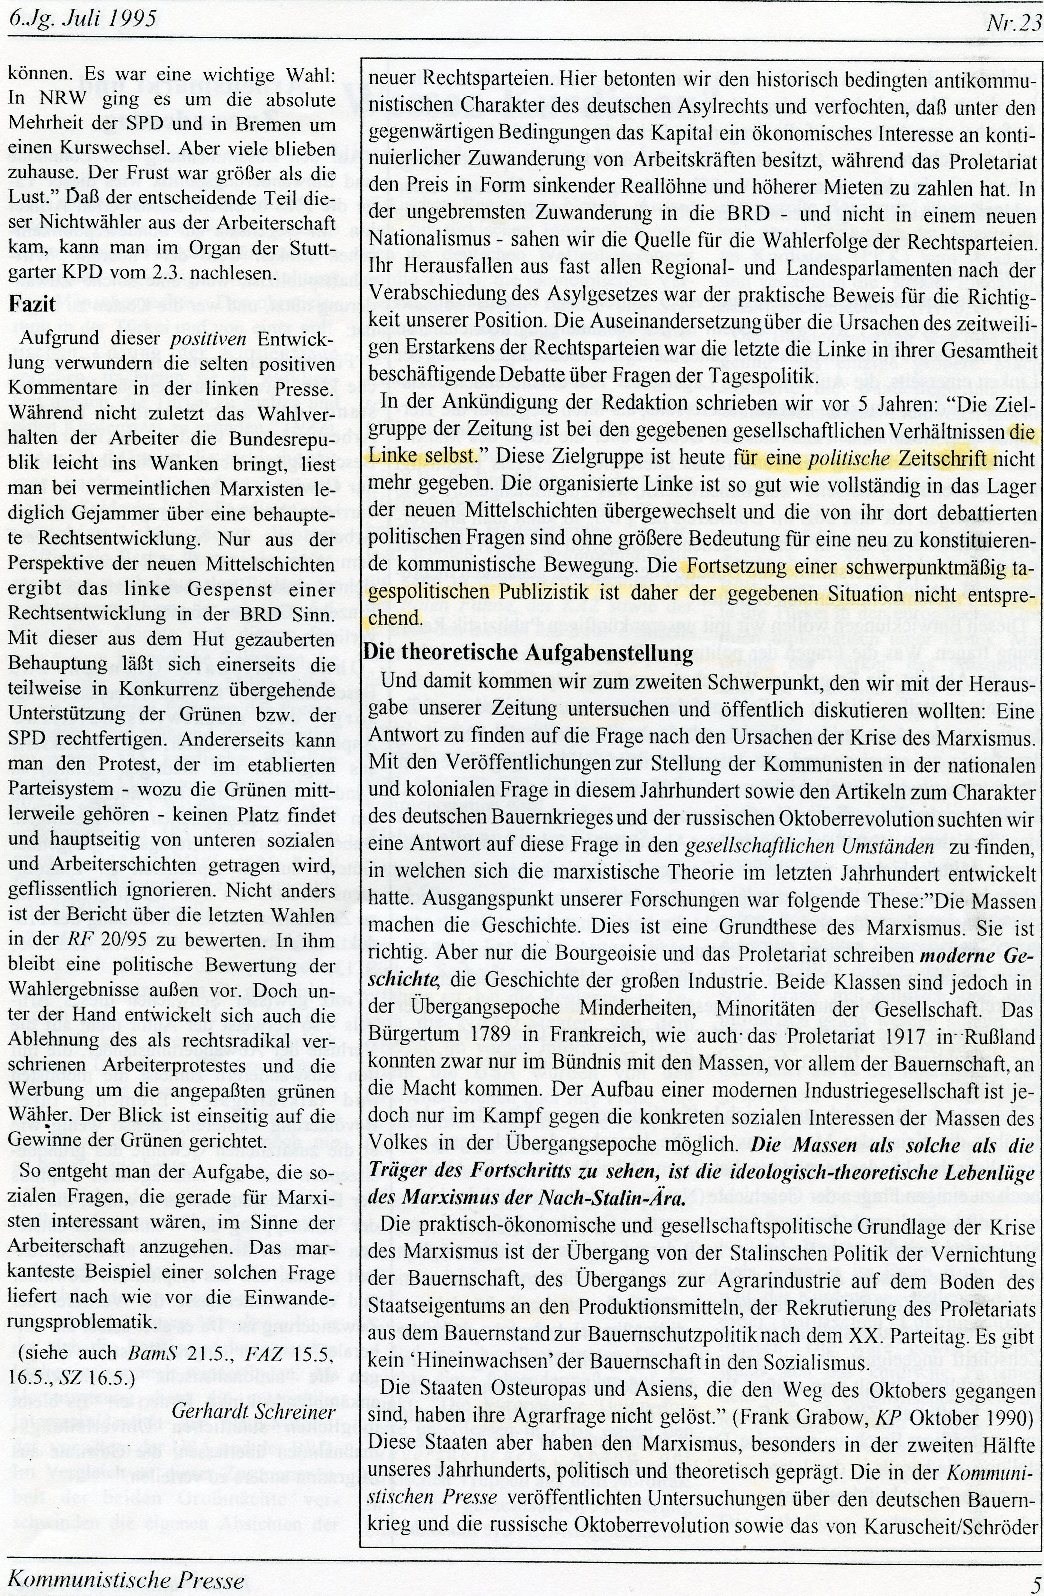 Gelsenkirchen_Kommunistische_Presse_1995_23_005